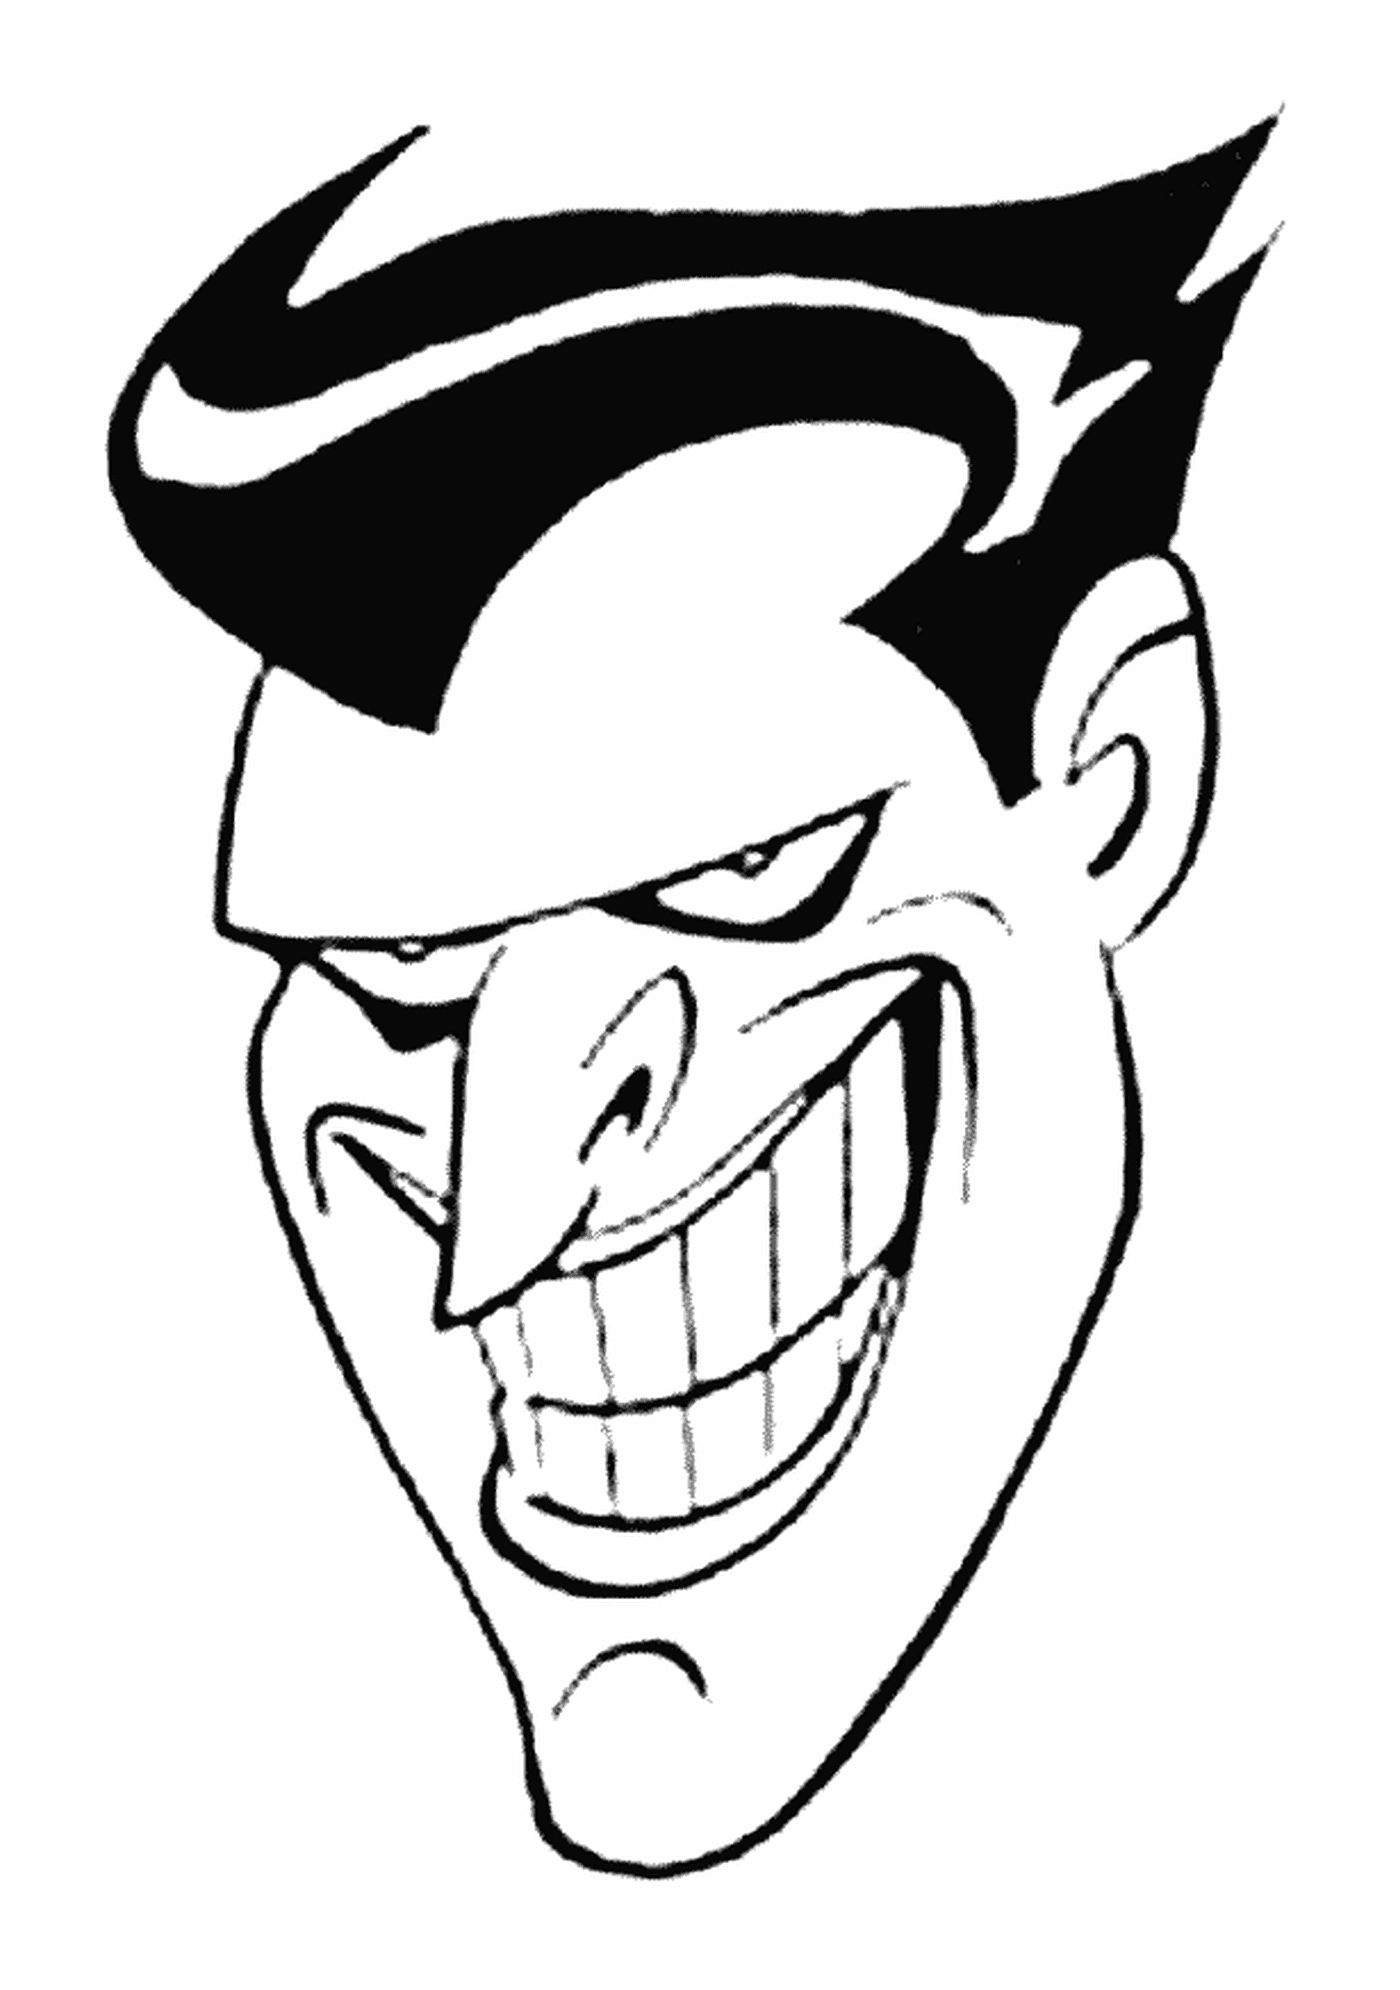   La tête du Joker de Batman, de la série animée 